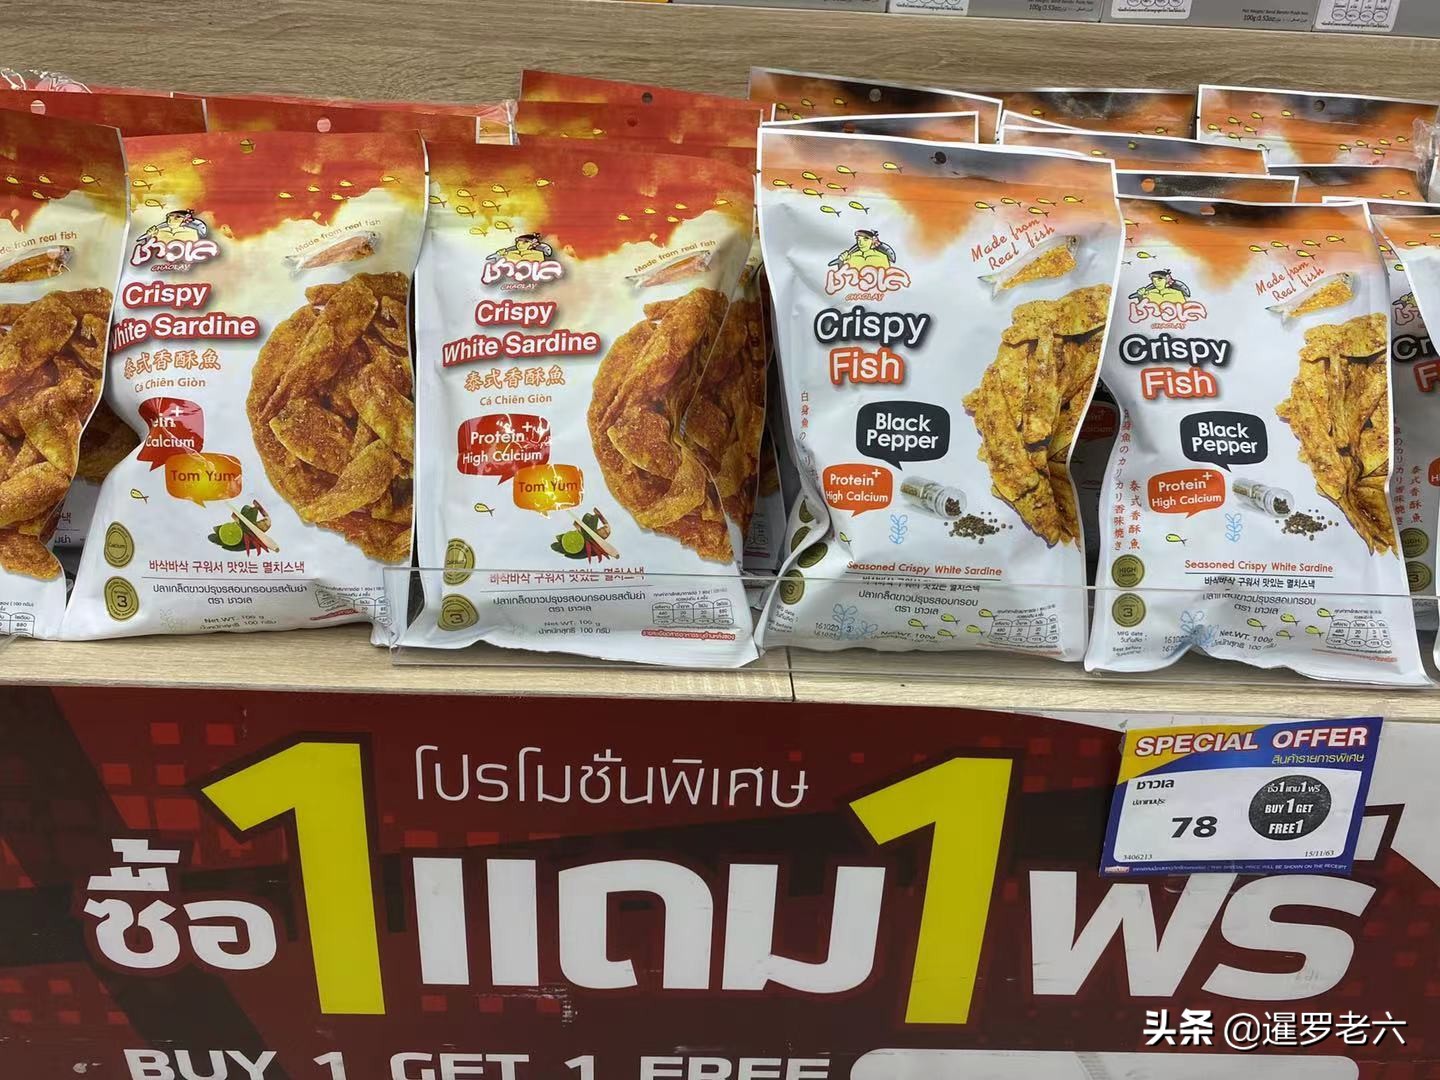 在泰国生活，哪家超市买一赠一的优惠活动多？答案在这里